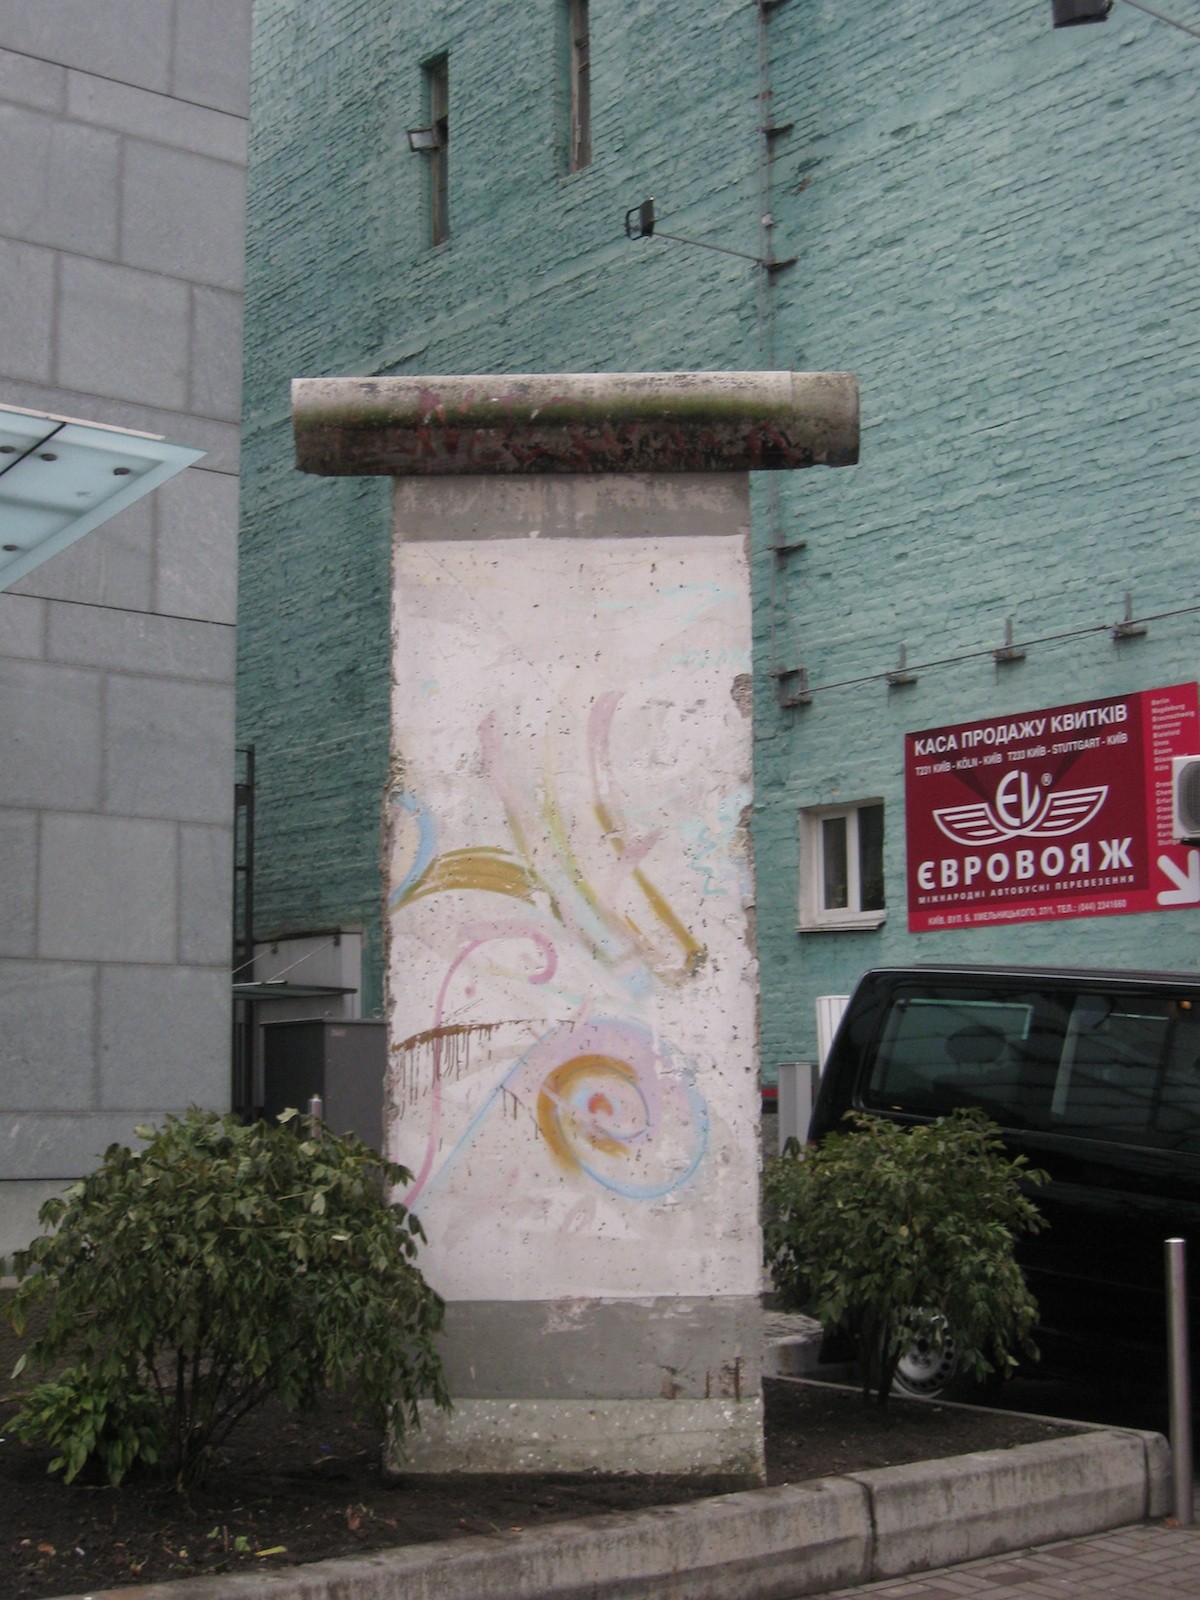 The Berlin Wall in Kiev, Ukrain